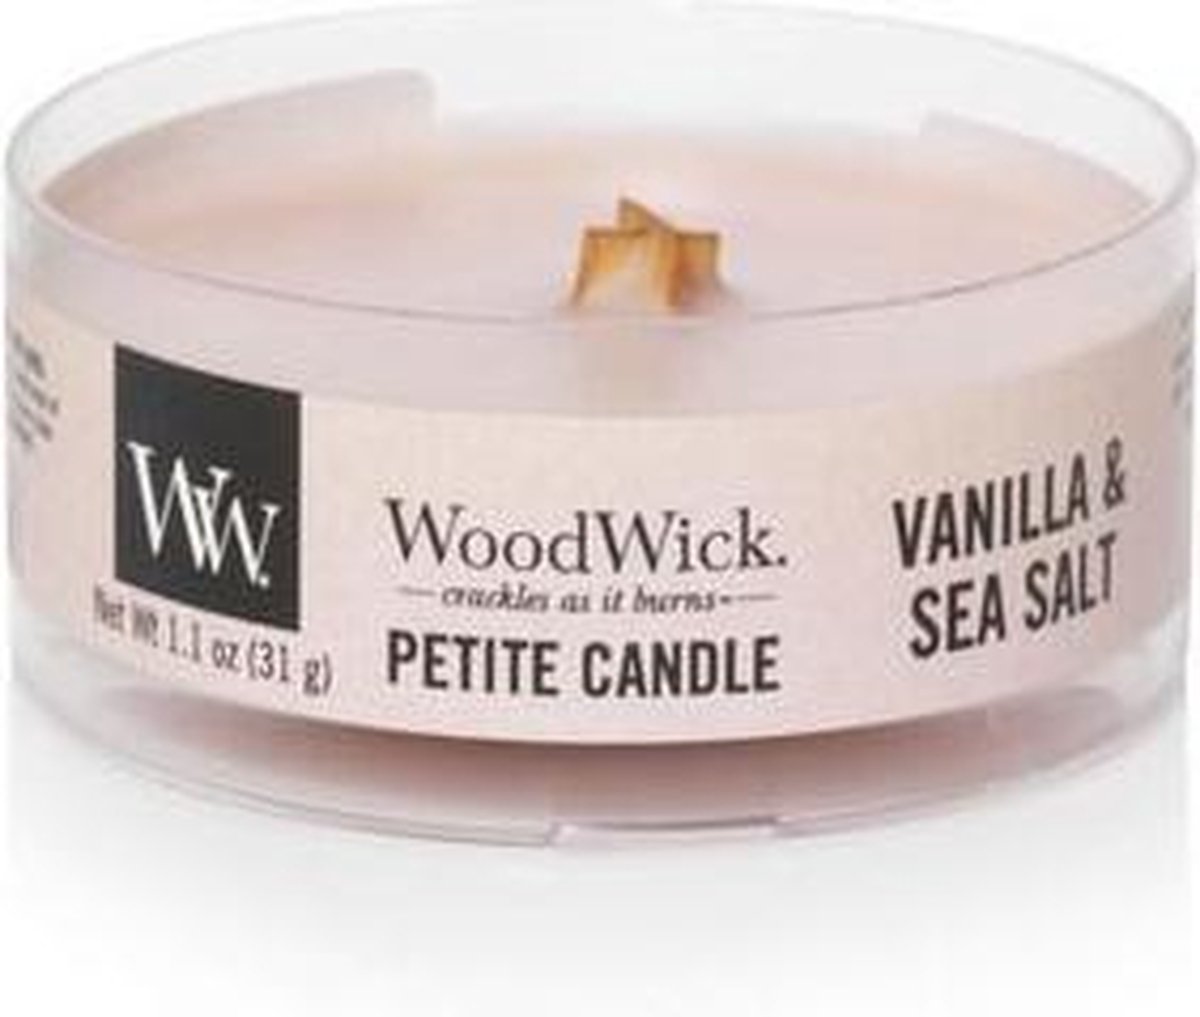 Woodwick Vanilla & Sea Salt Petite Candle - Woodwick